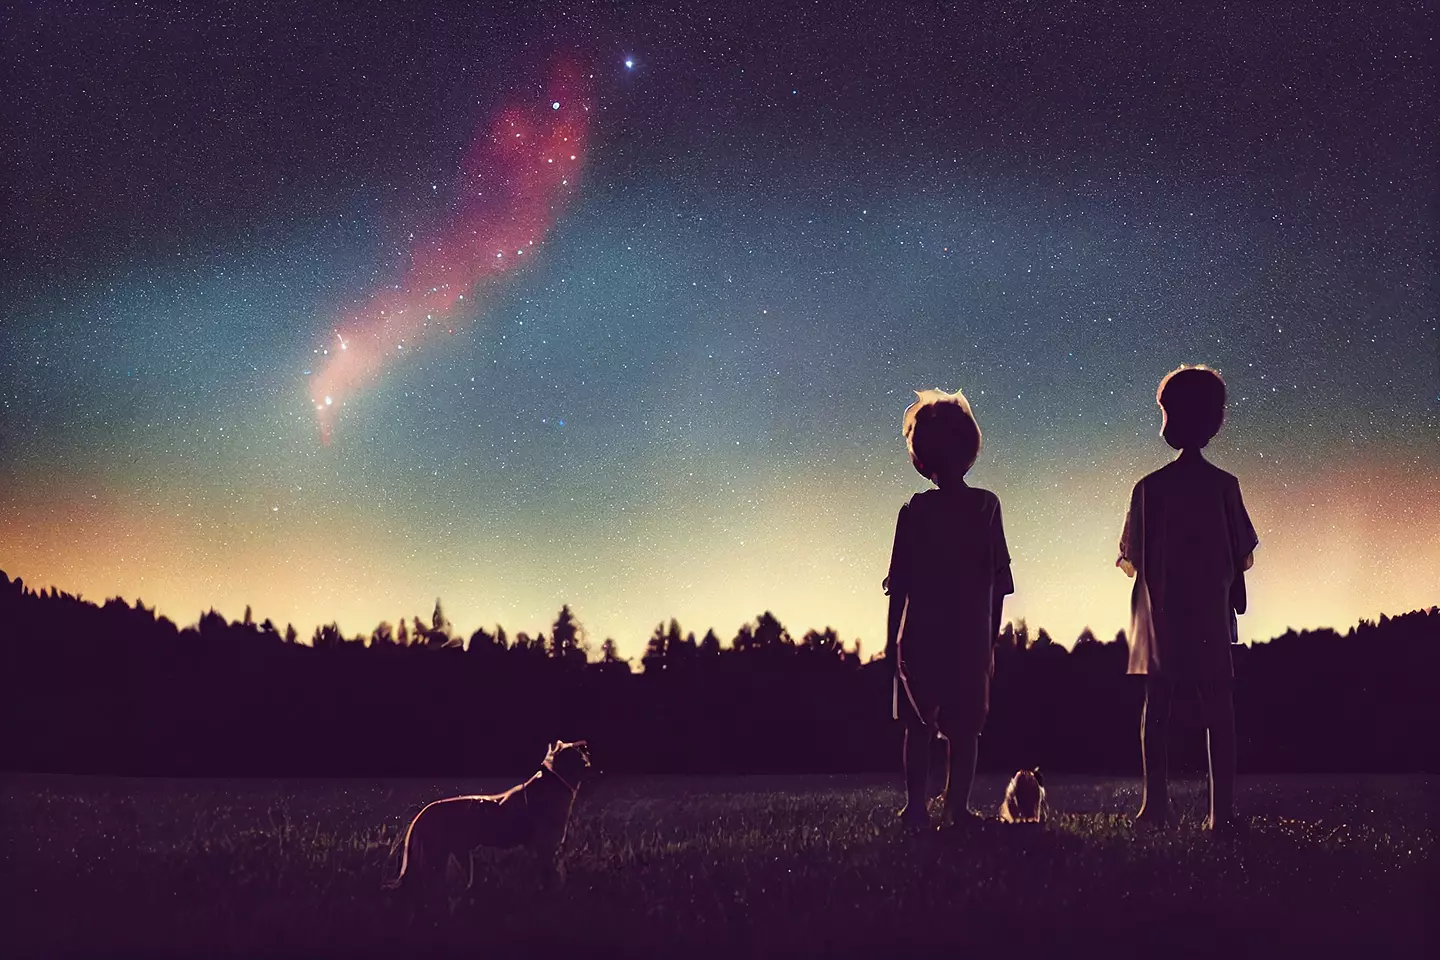 children stargazing with their dog